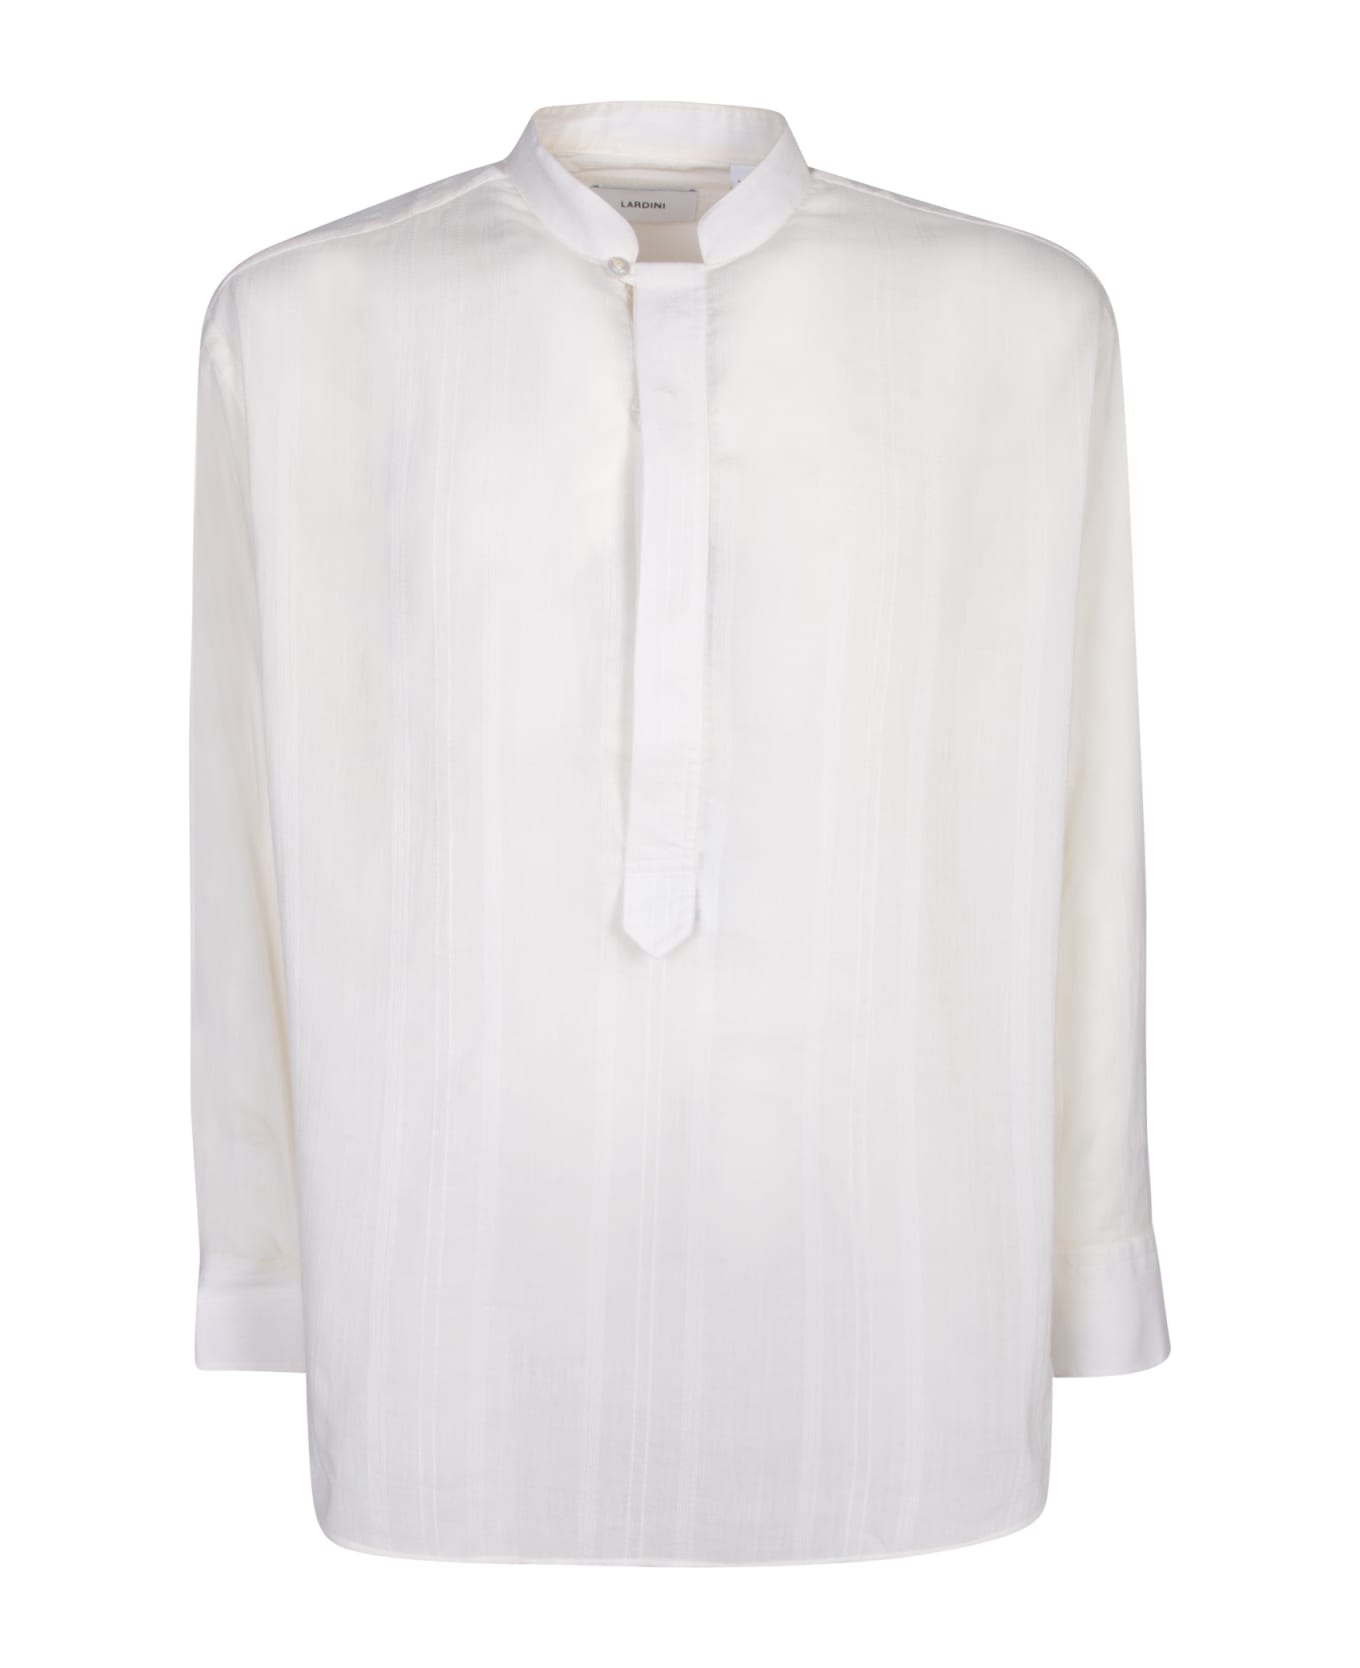 Lardini Tim Striped White Shirt - White